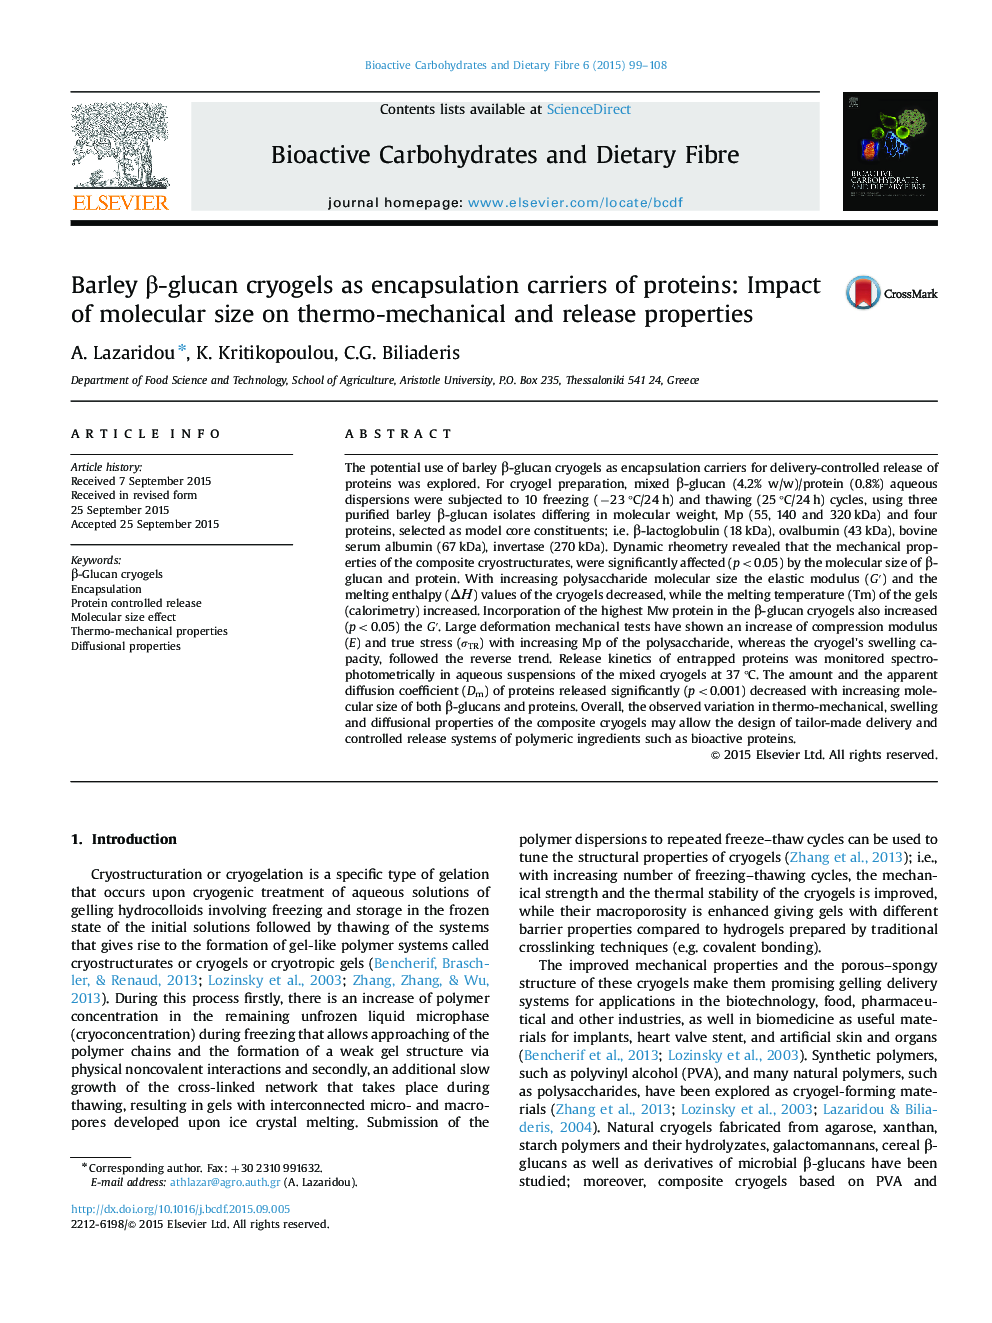 جیره یولا یونی گلوکان به عنوان غلظت دهنده پروتئین ها: اثر اندازه مولکولی بر خواص ترمو مکانیکی و انتشار 